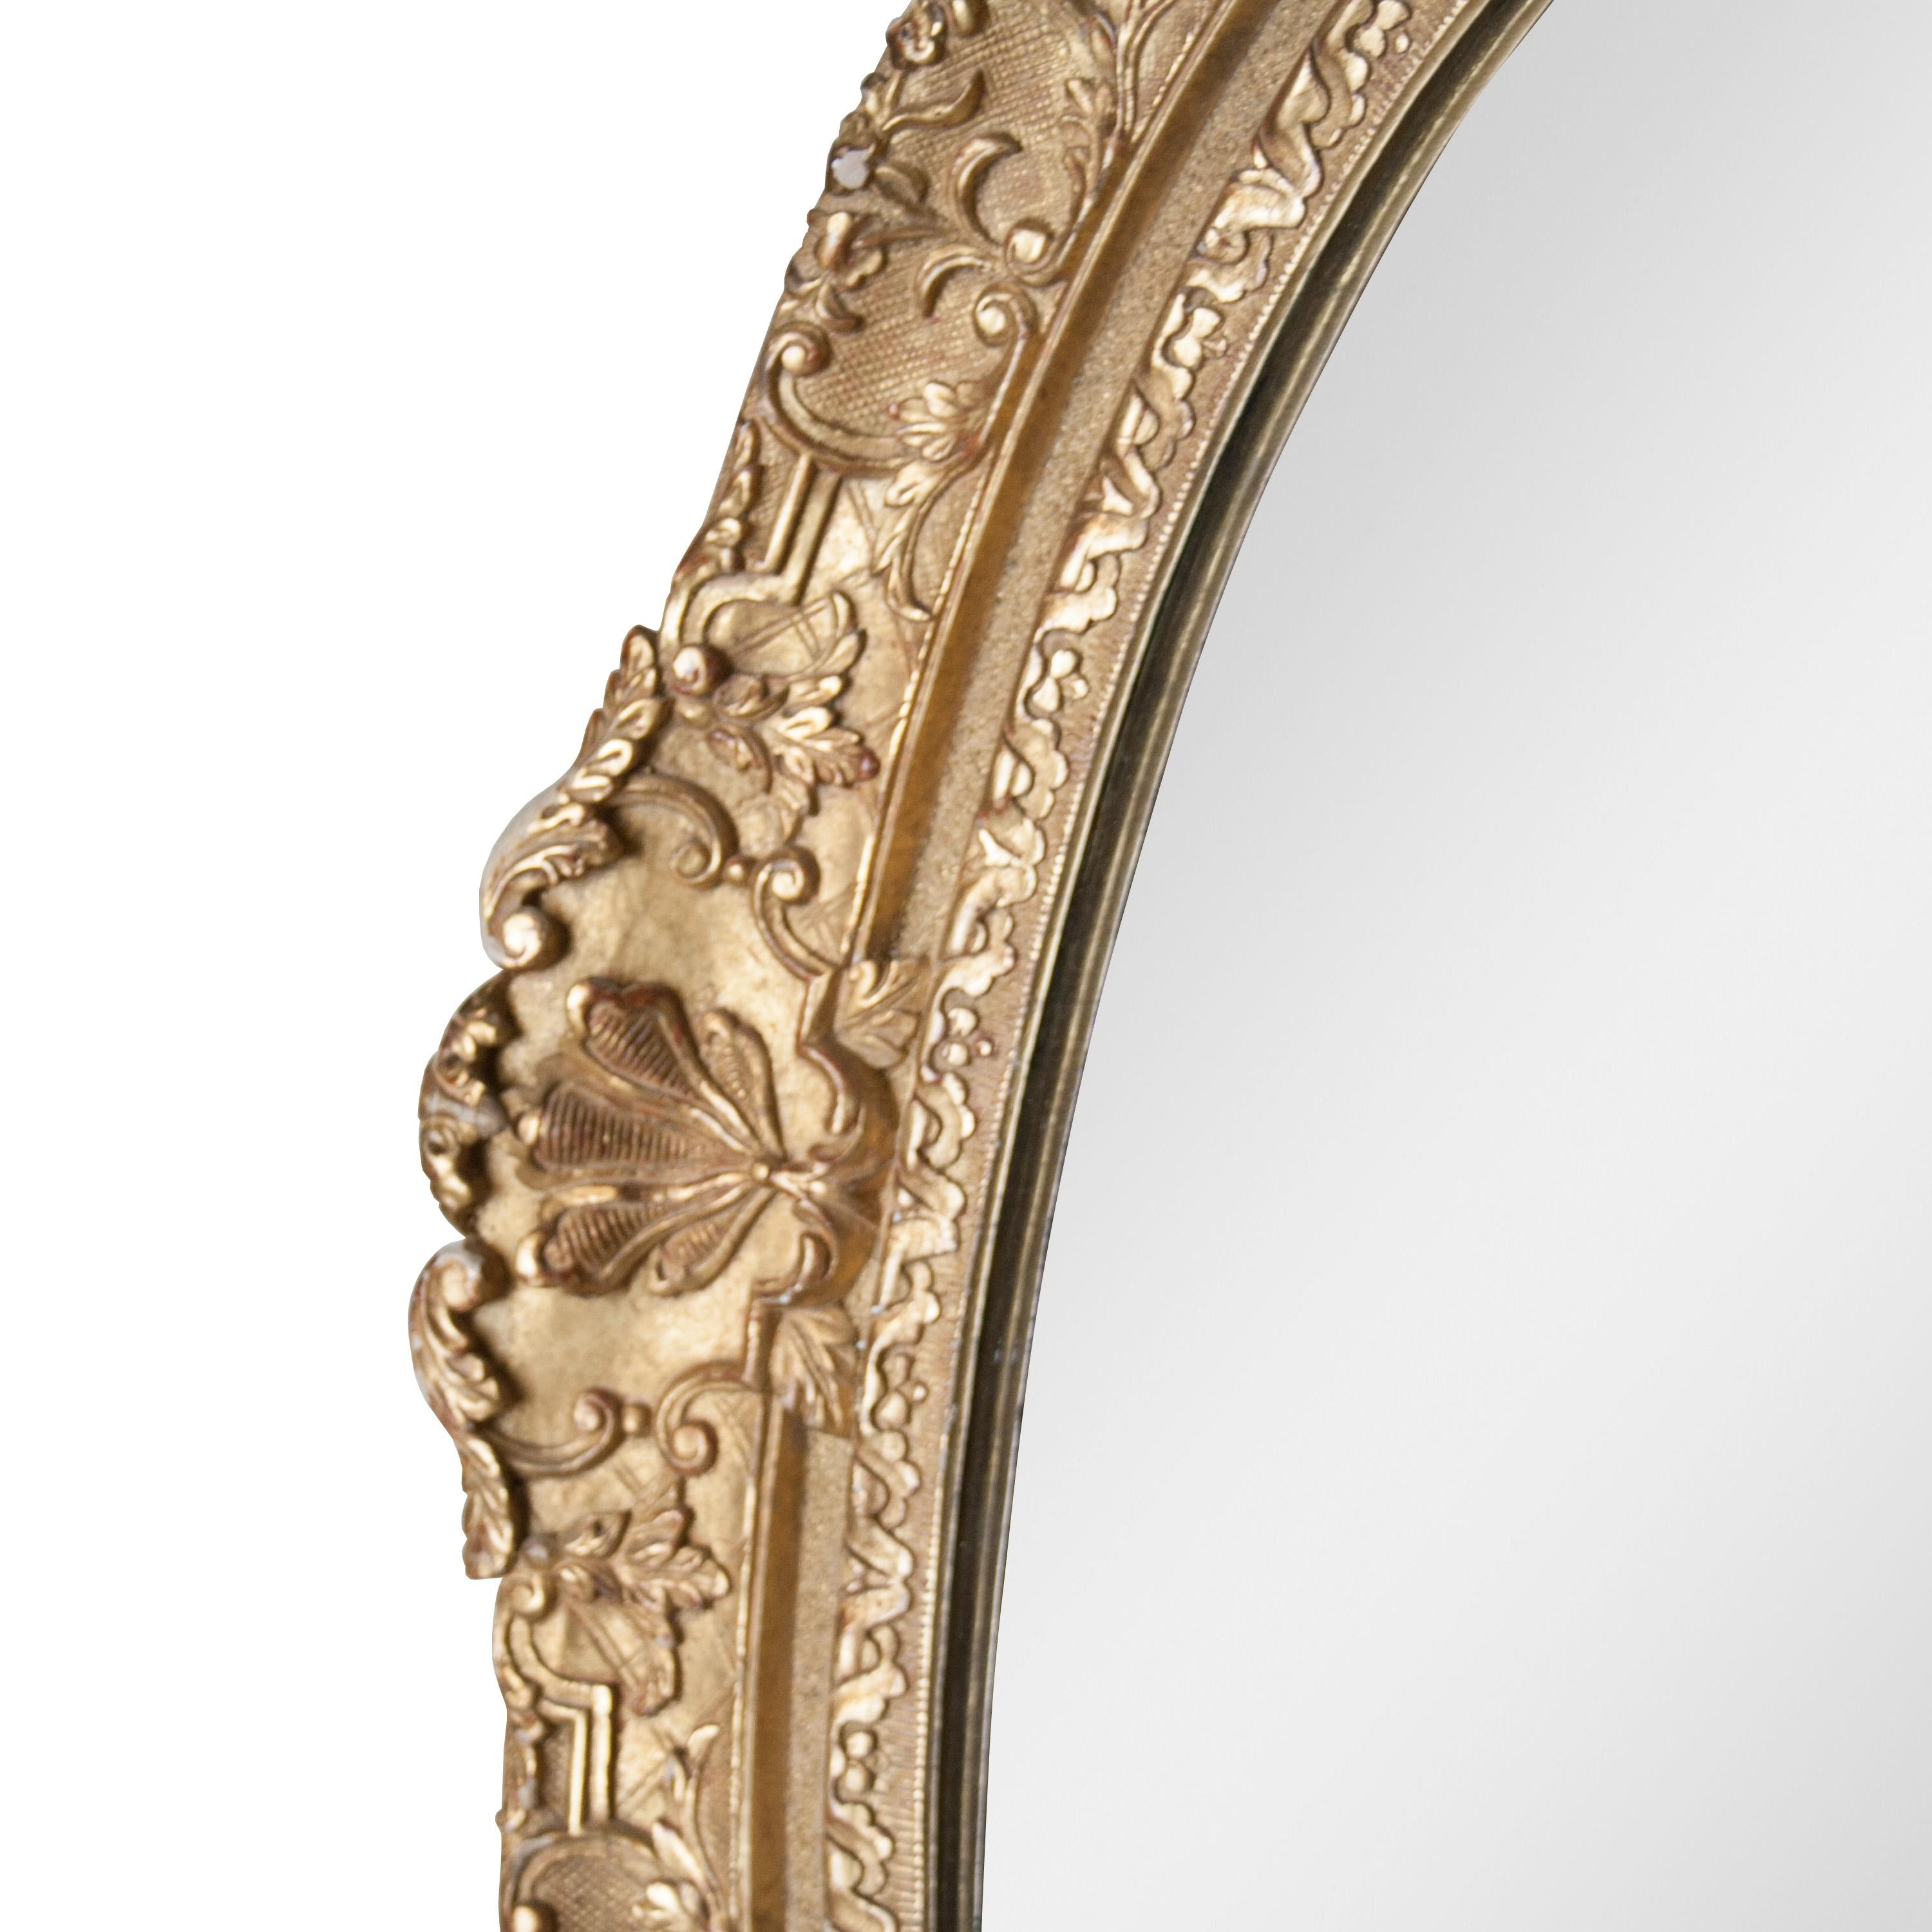 Handgefertigter Spiegel im neoklassischen Empire-Stil. Ovale, handgeschnitzte Holzstruktur mit Goldfolienbeschichtung.
 